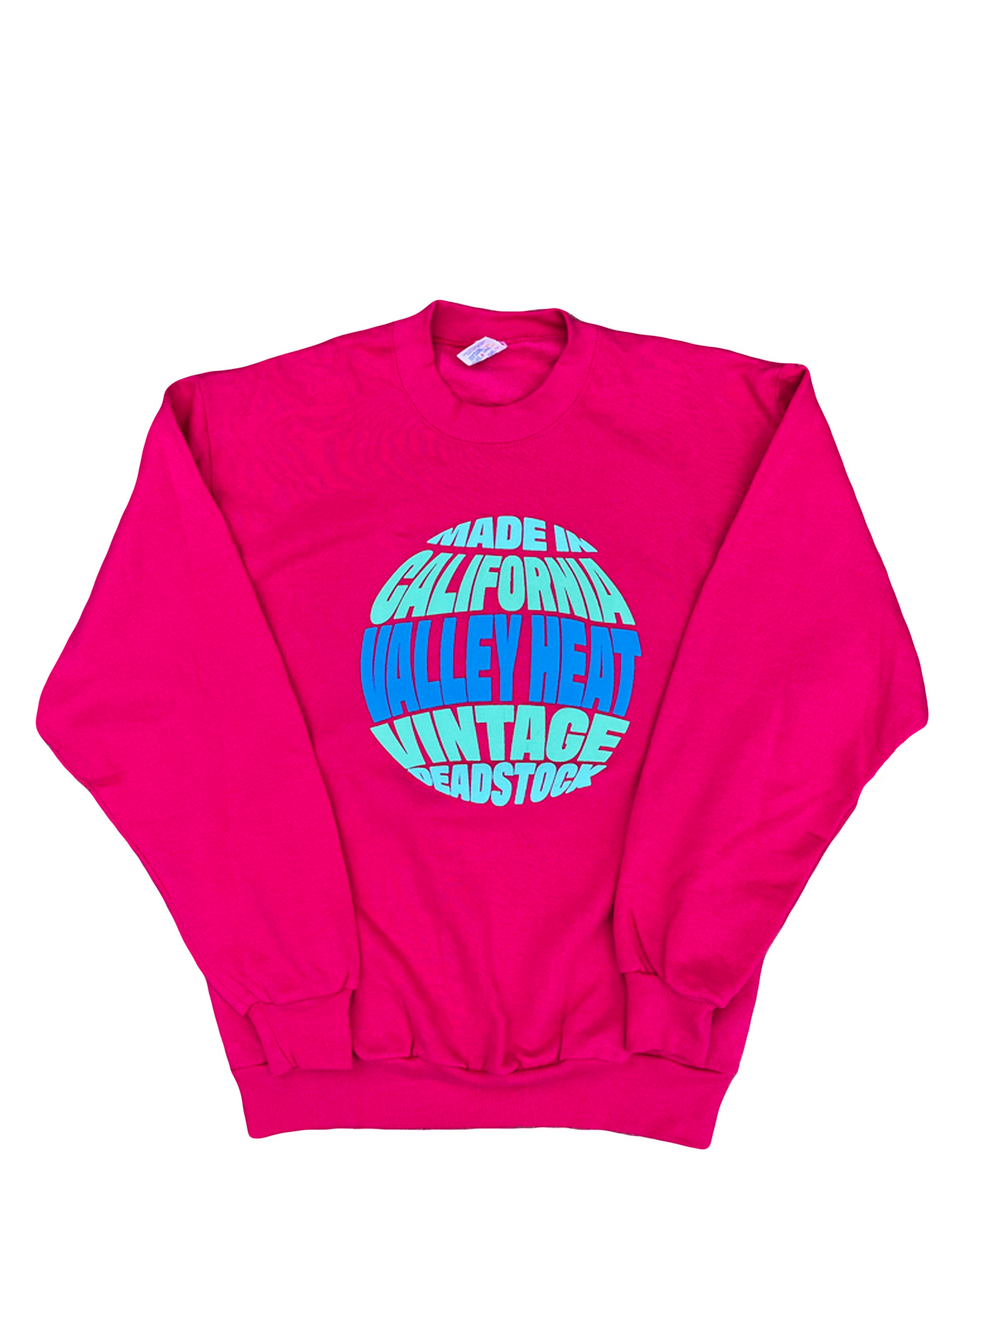 Hot Pink Sweatshirt 001